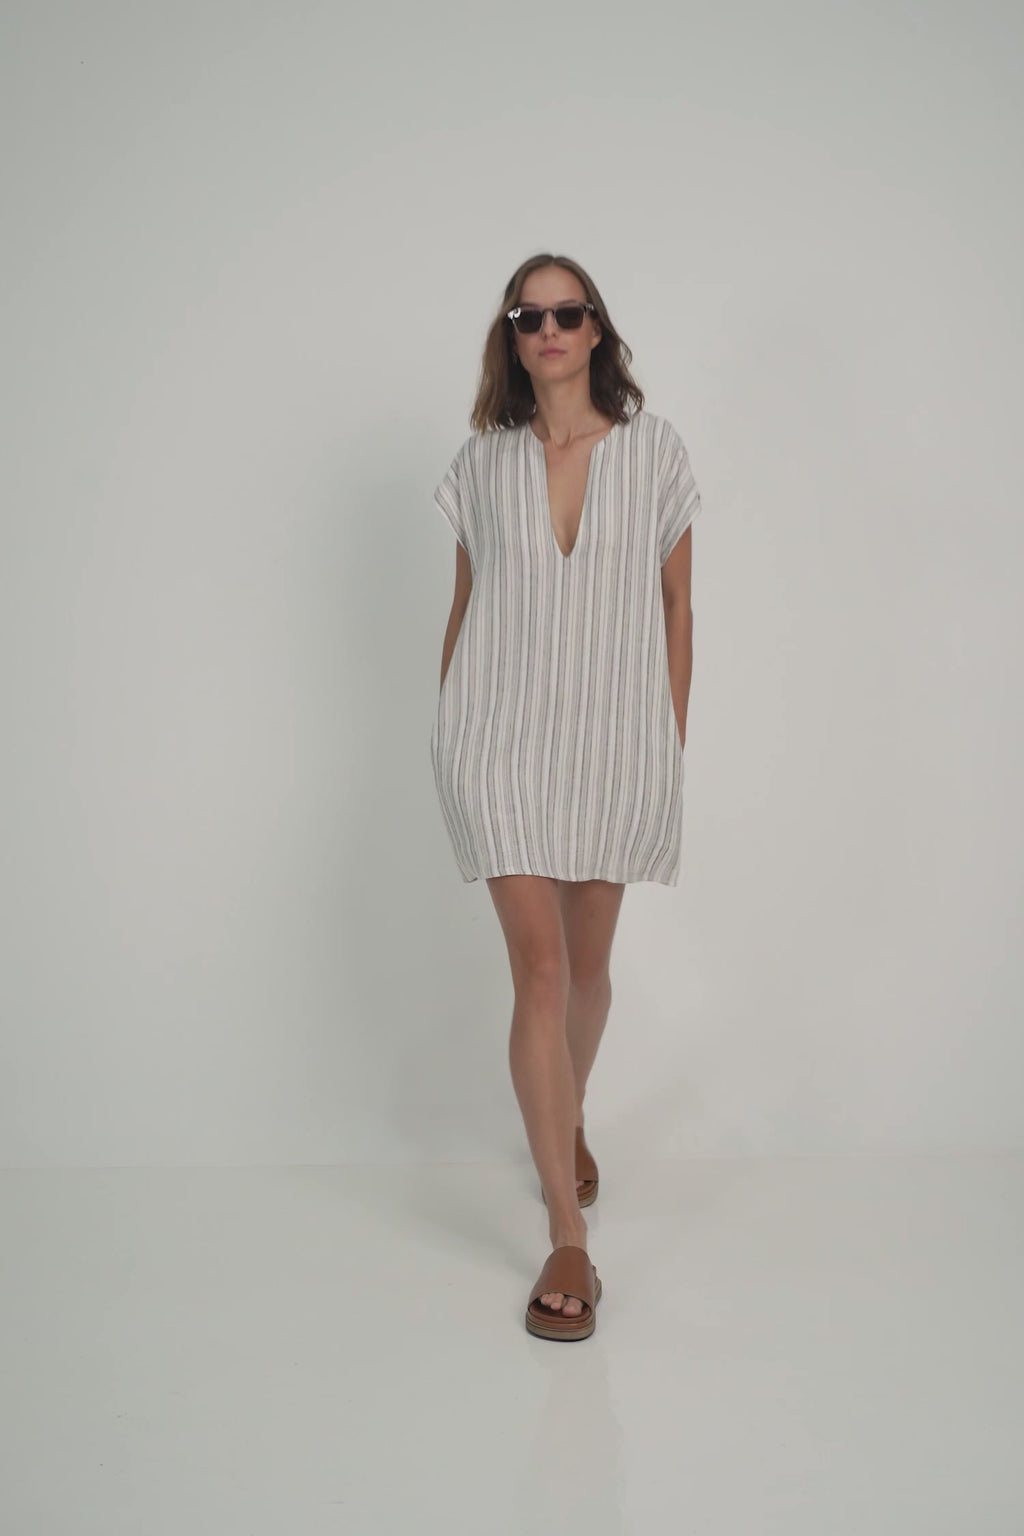 A Model Wearing a Short Linen Stripe Mini Dress for Summer by Lilya Australian brand